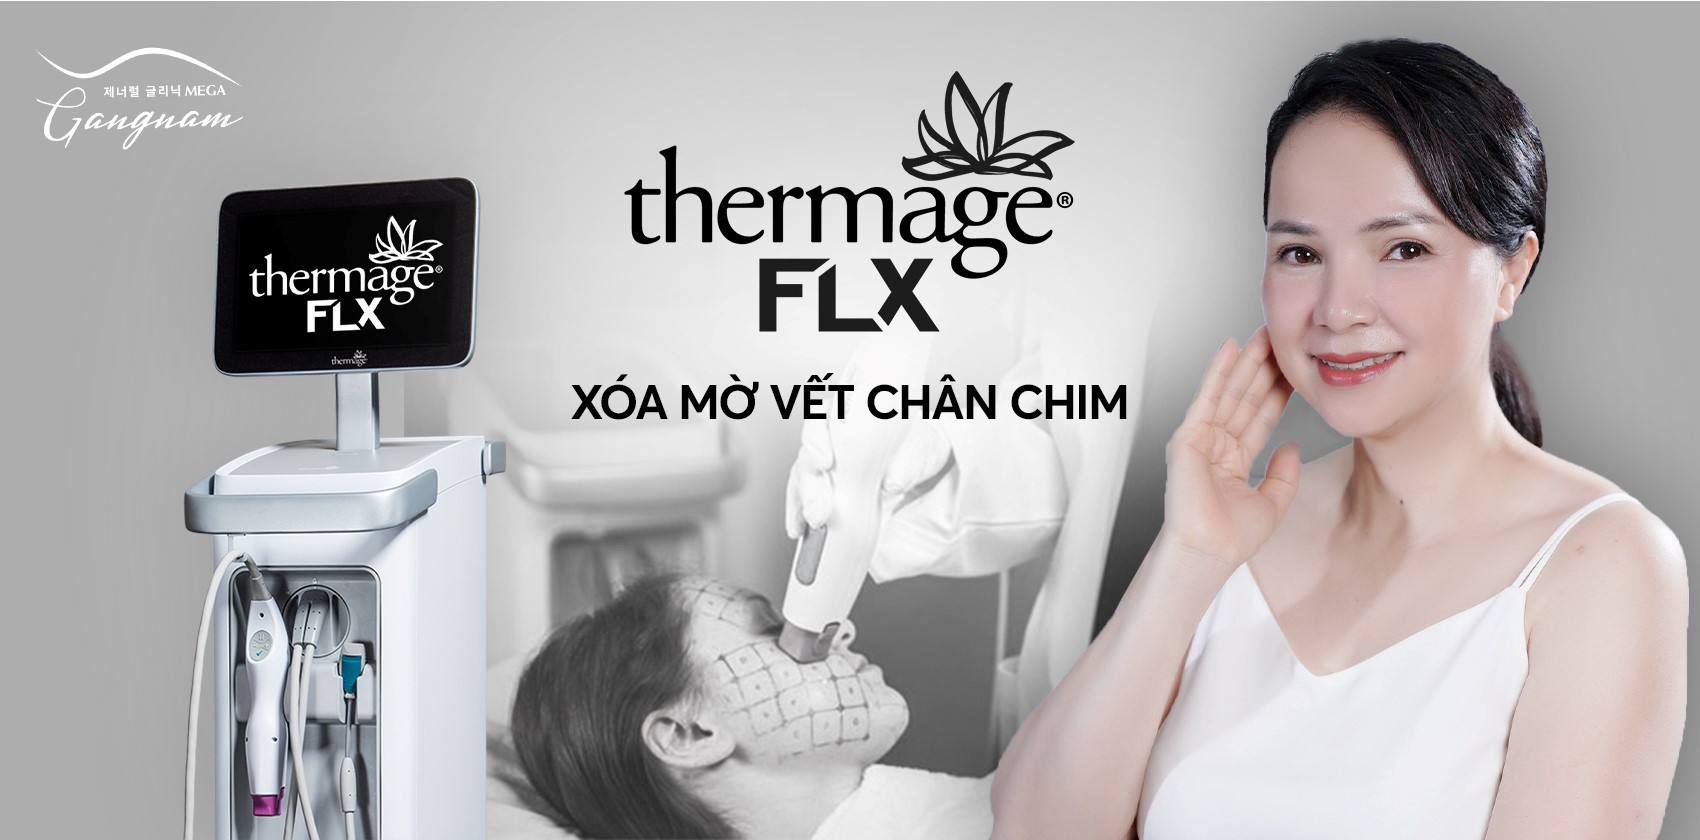 Công nghệ Thermage FLX xóa mờ vết chân chim